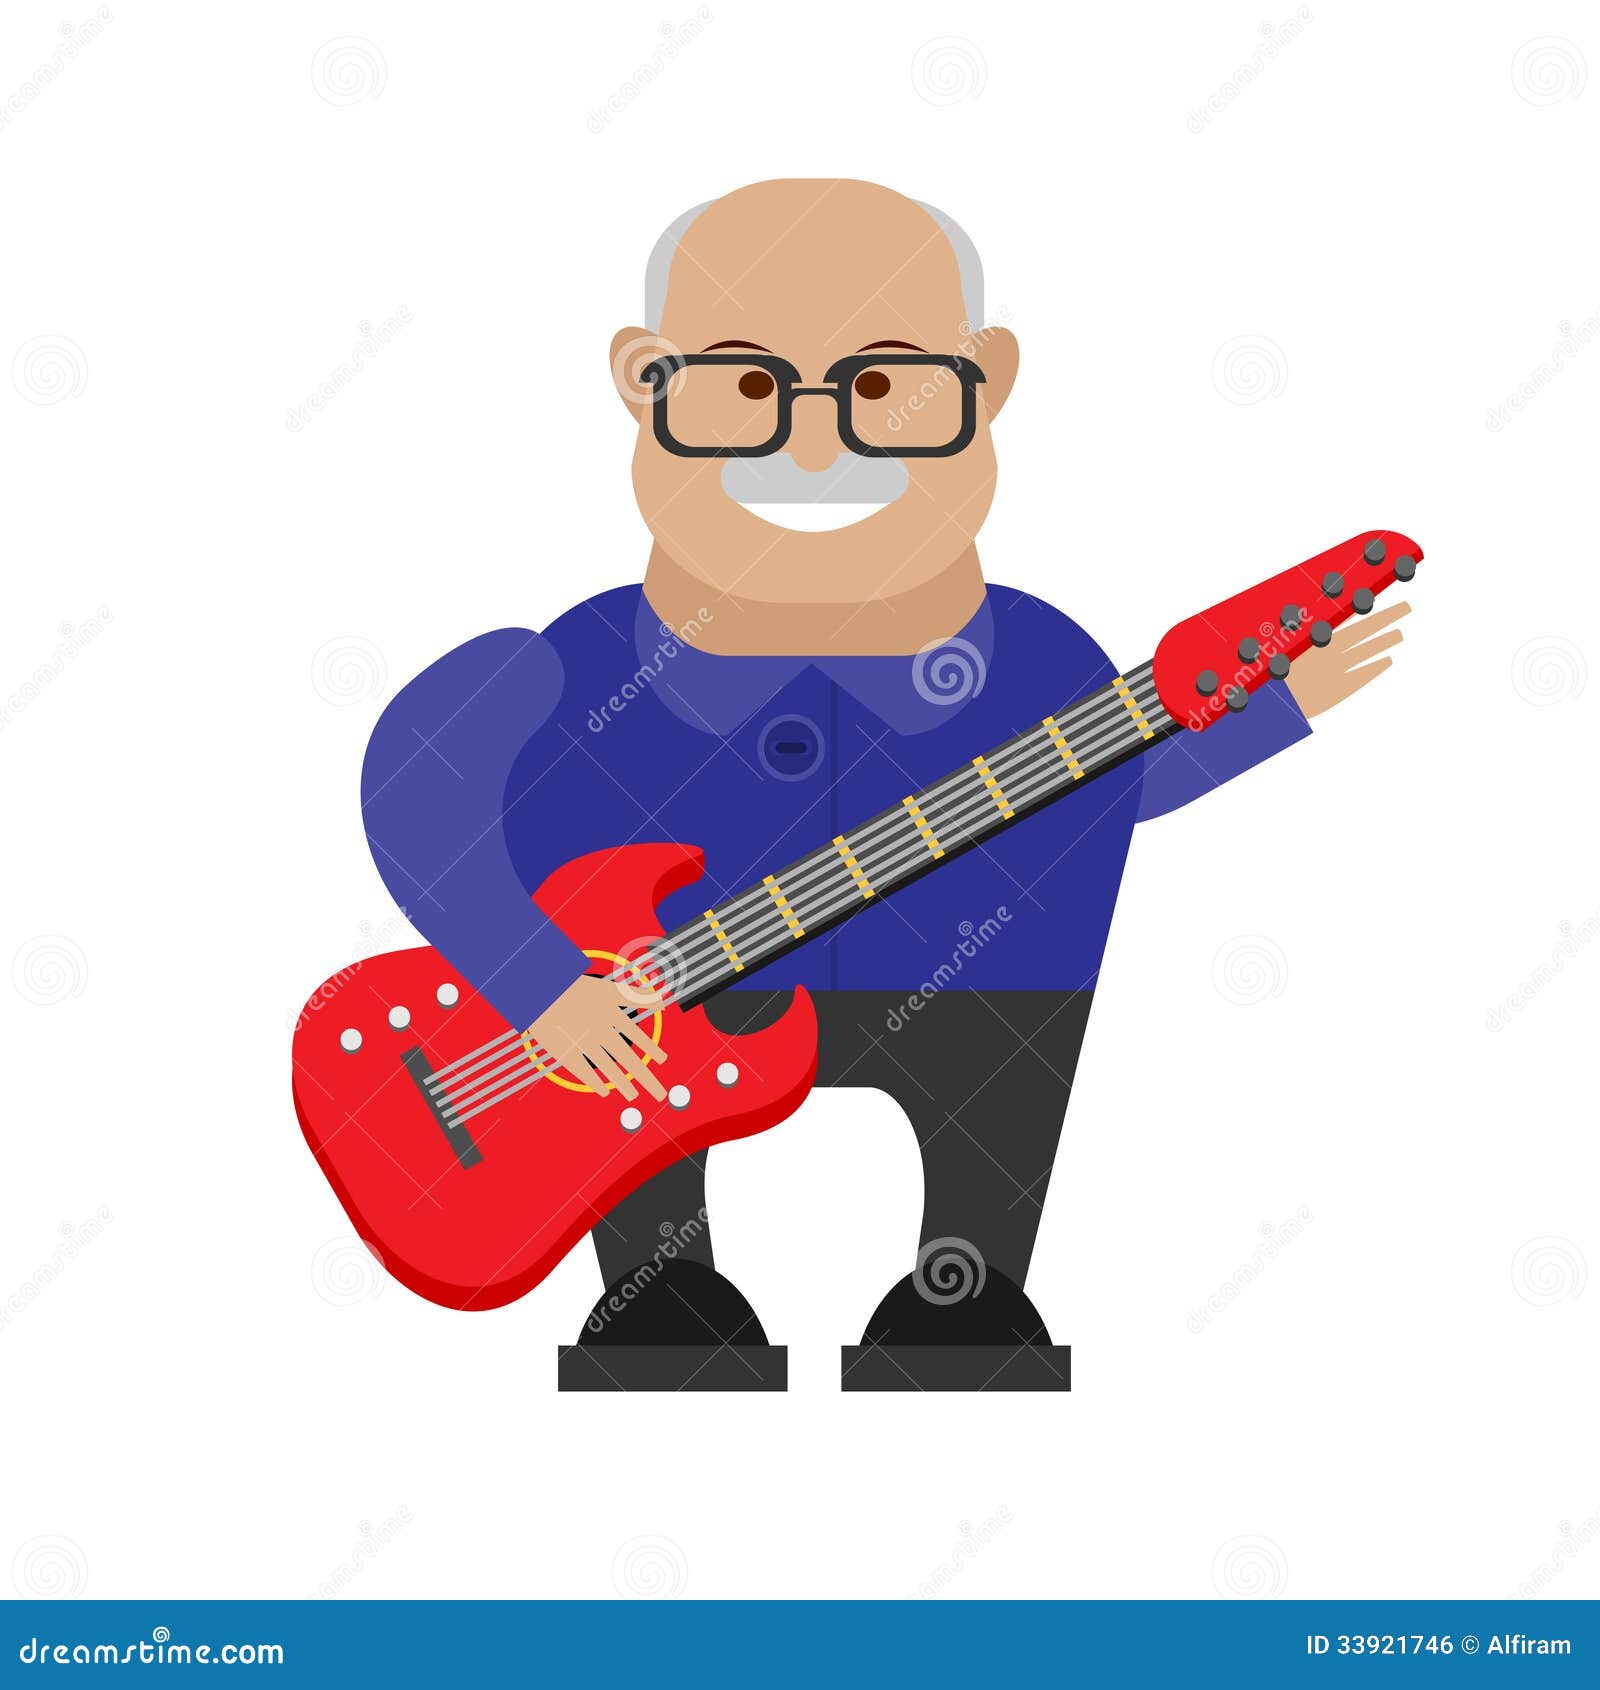 Old Man Guitarist Royalty Free Stock Image - Image: 33921746
 Cartoon Man Playing Guitar